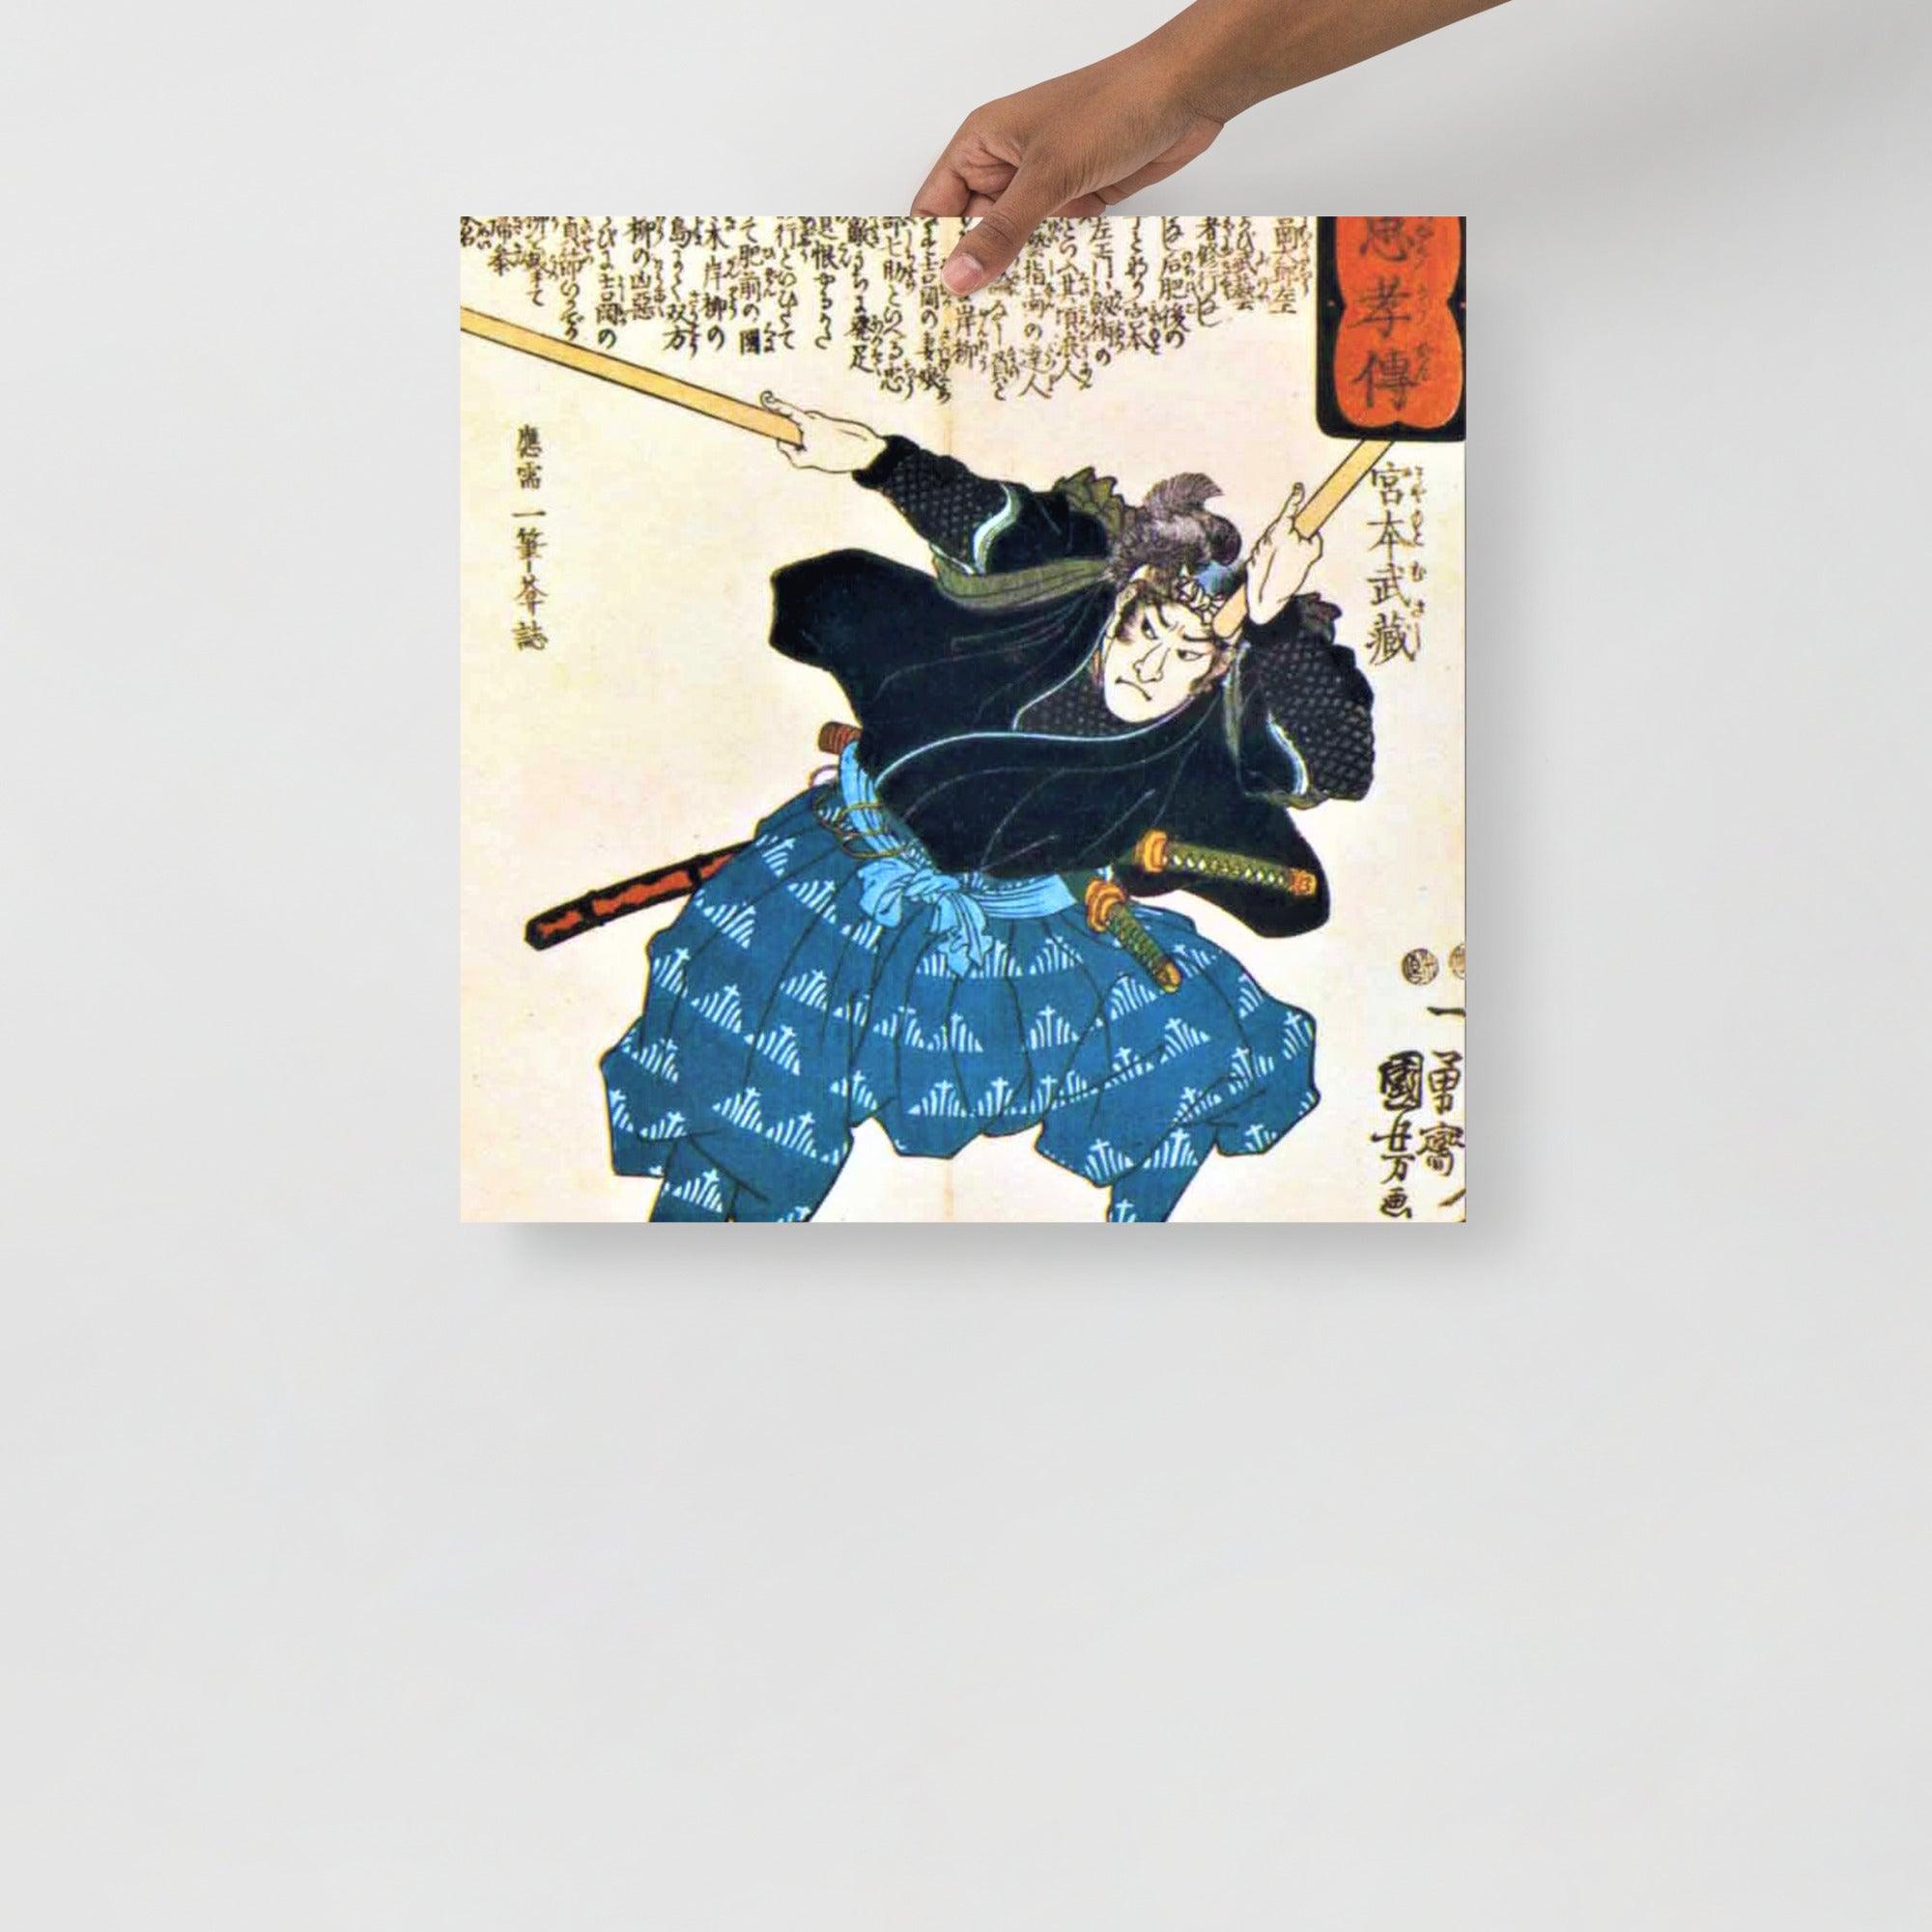 A Miyamoto Musashi by Utagawa Kuniyoshi poster on a plain backdrop in size 18x18”.